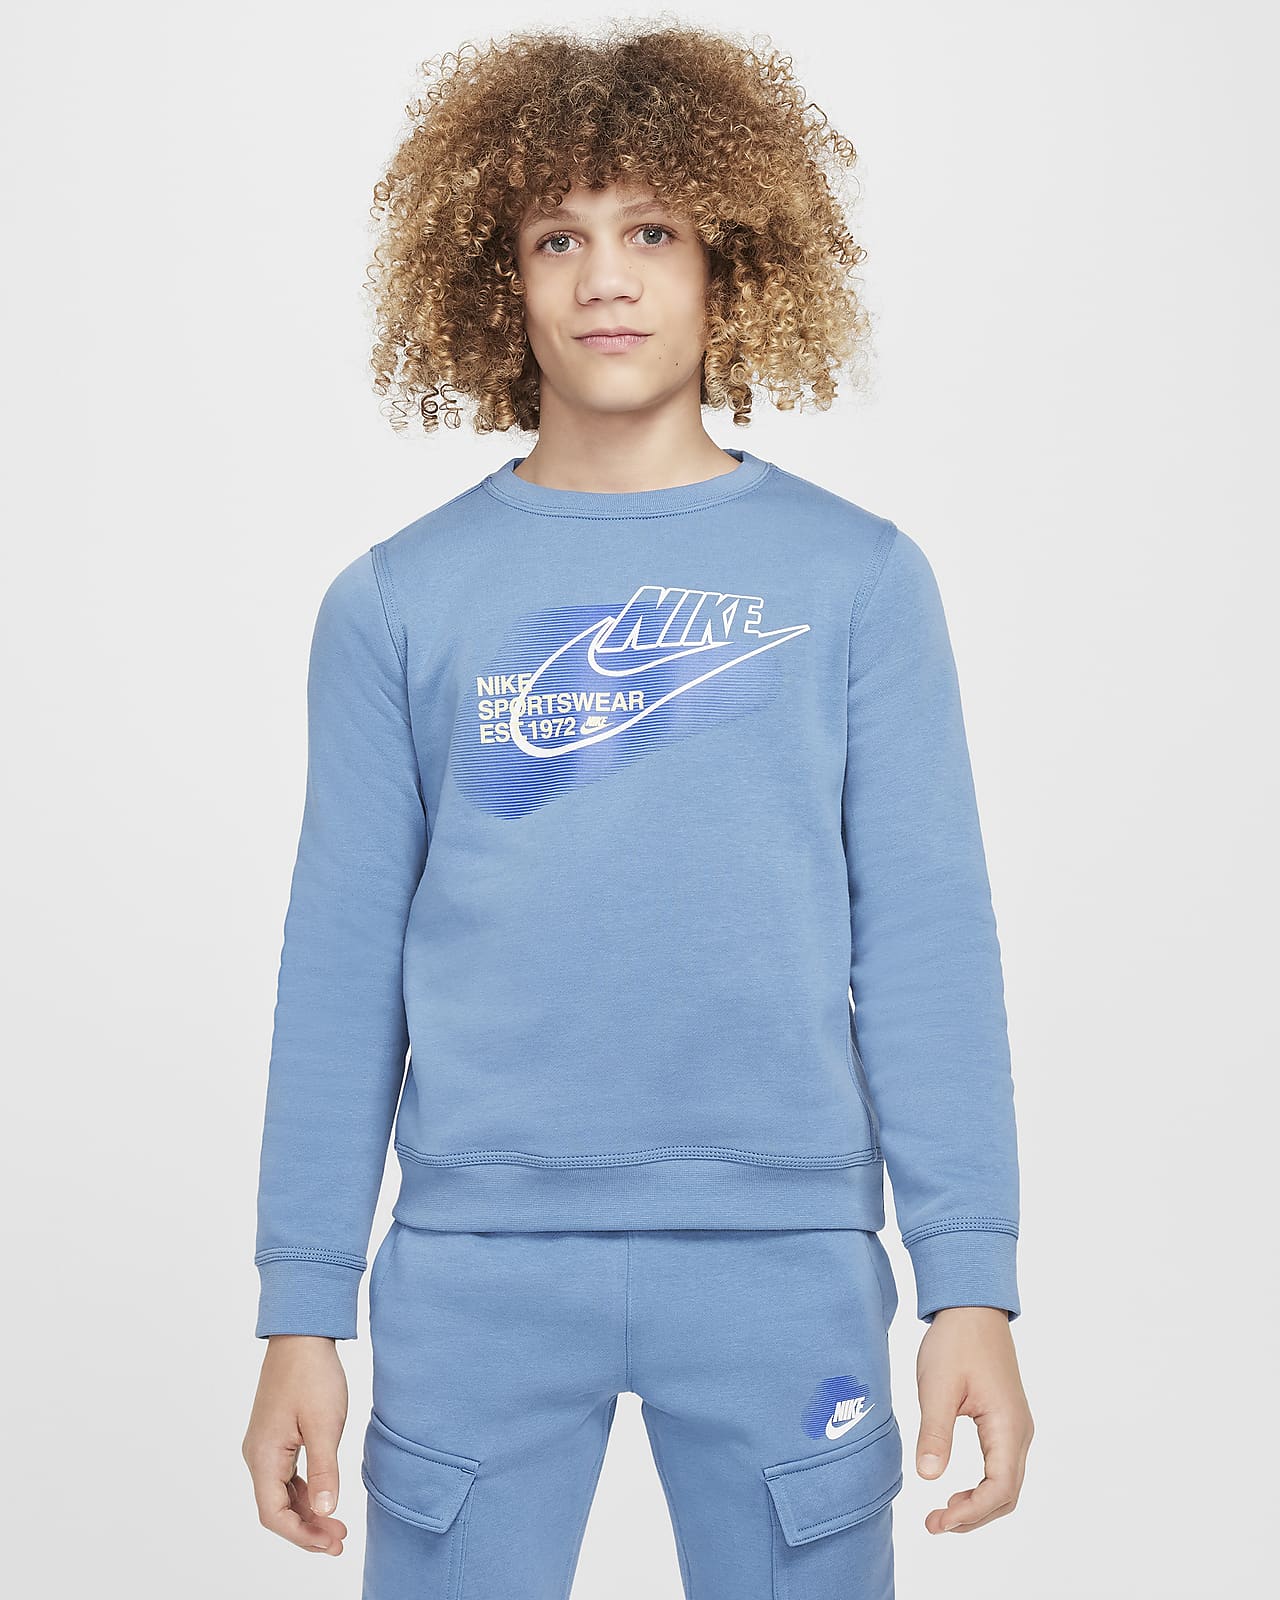 Nike Sportswear Standard Issue Older Kids' (Boys') Crew-Neck Sweatshirt